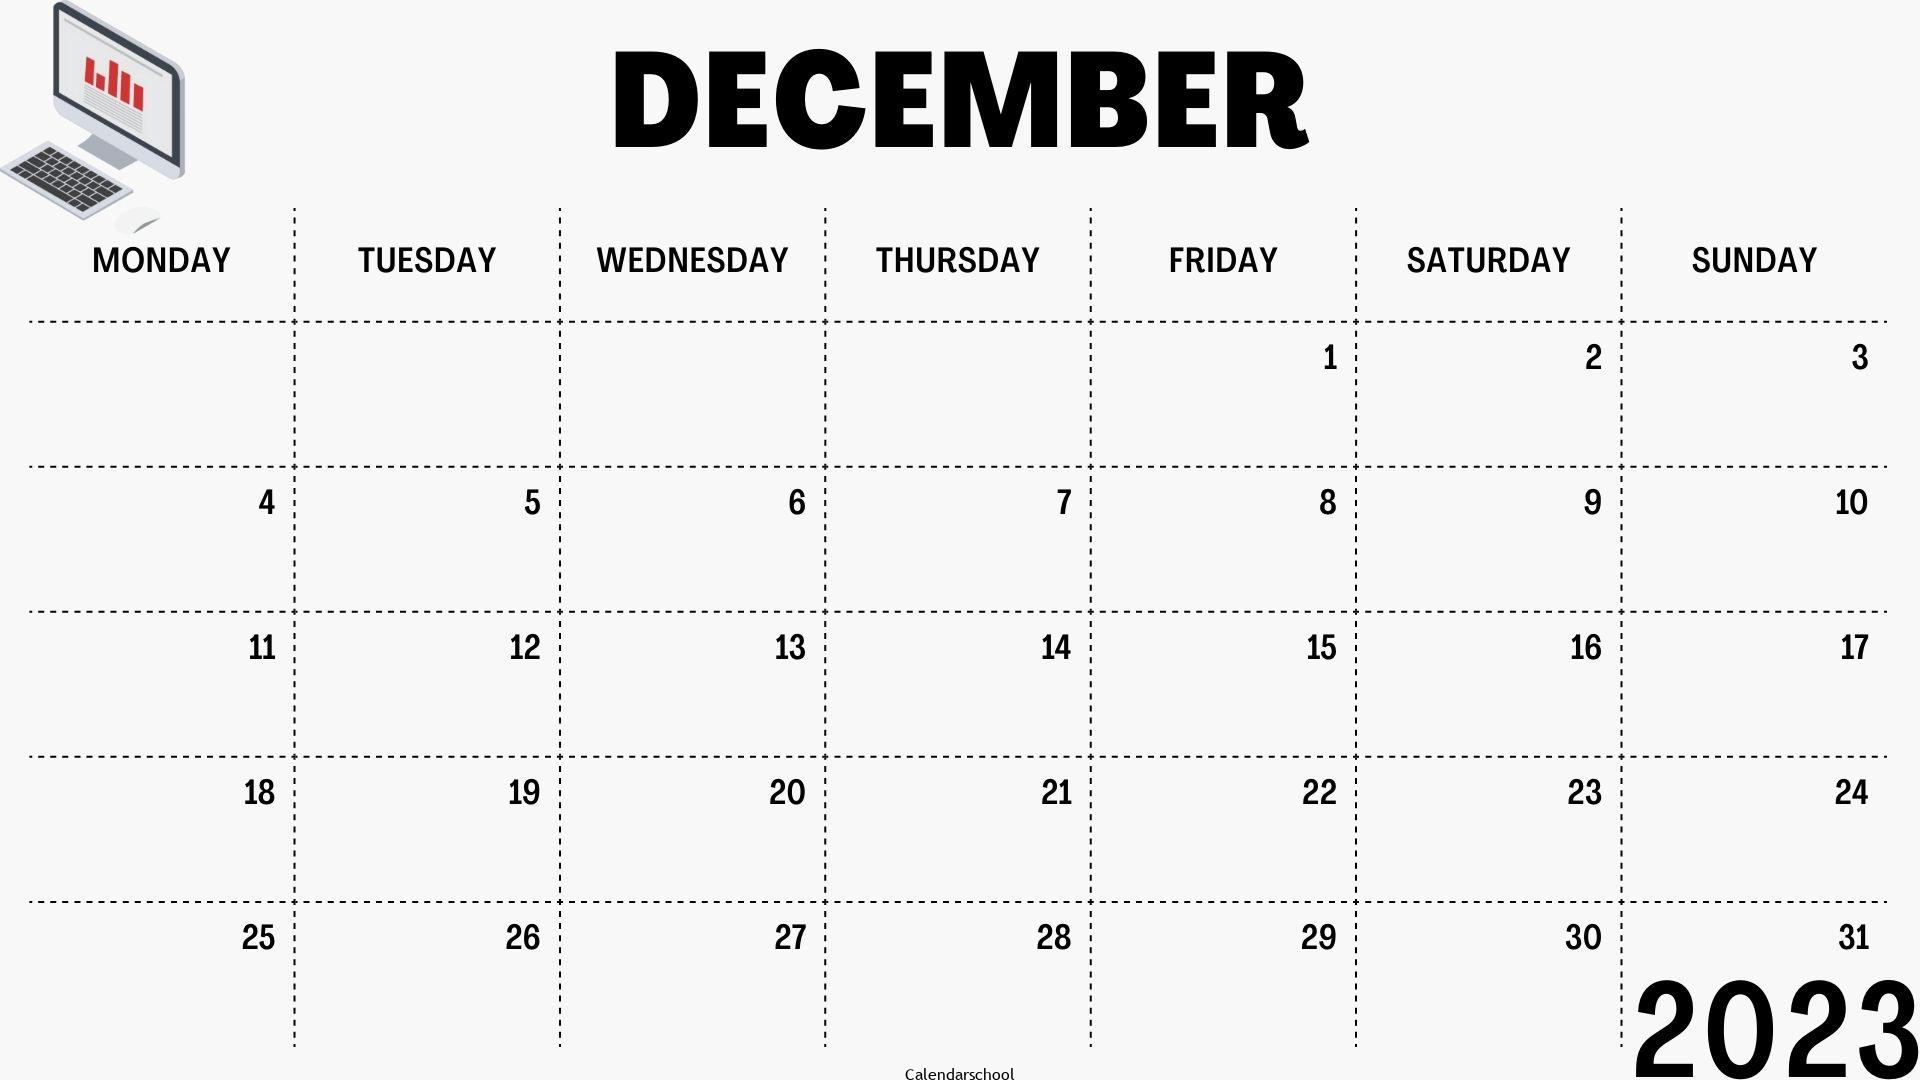 December 2023 Printable Calendar By Week